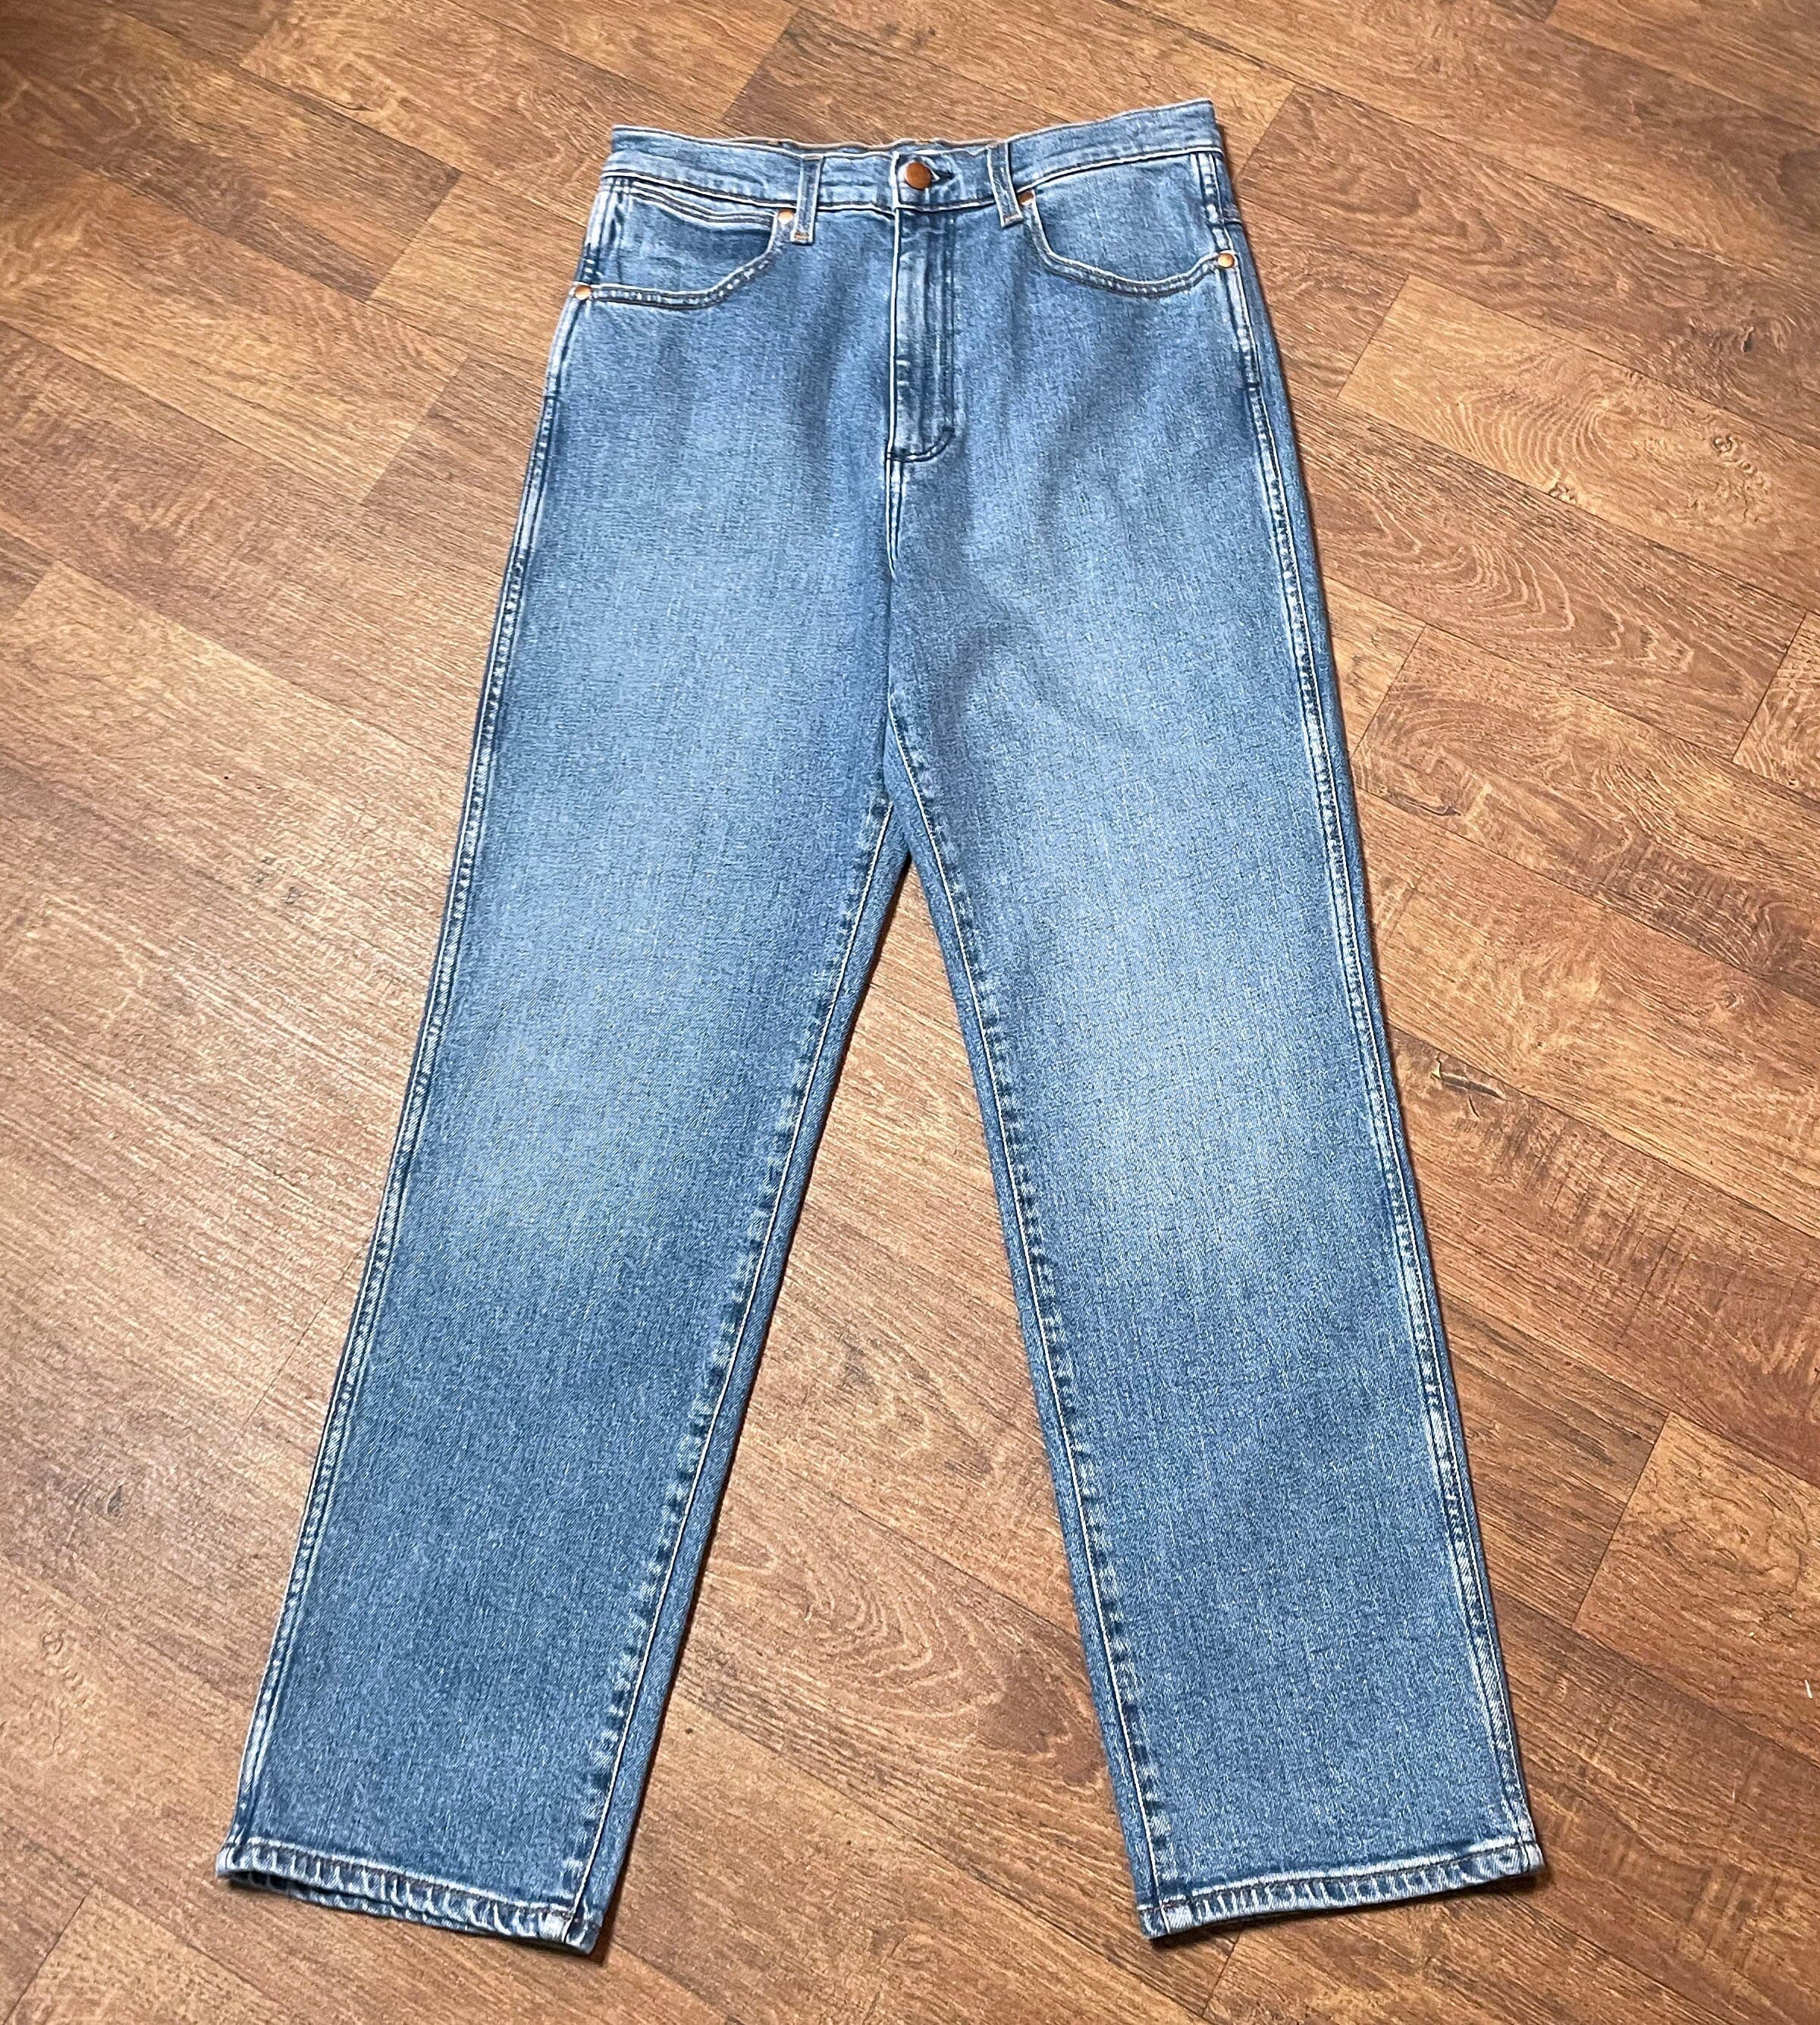 Vintage Wrangler Jeans Retro Wrangler Wild West 603 Jeans - Etsy Denmark